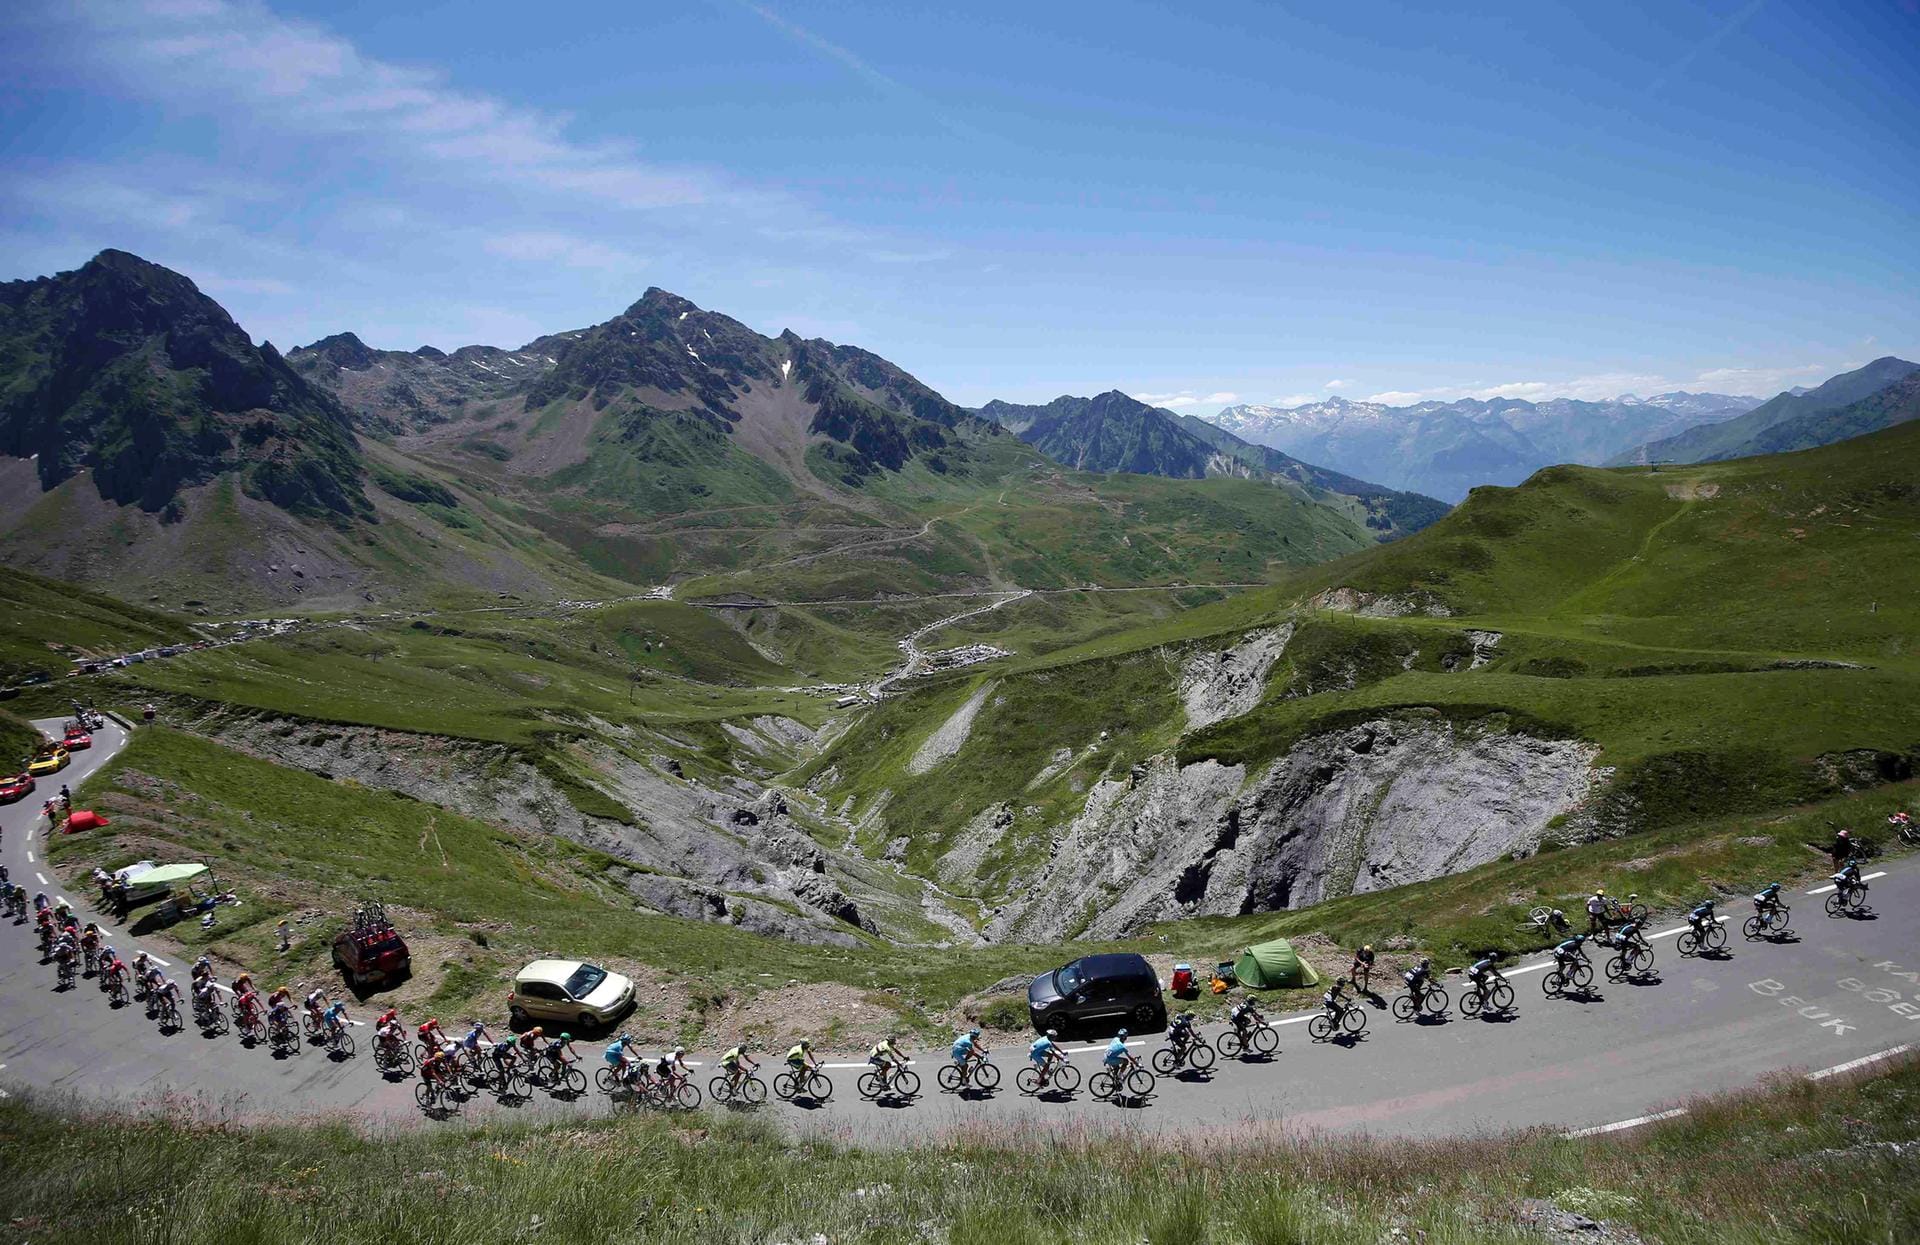 Beeindruckende Bergwelt: Die Fahrt durch die Pyrenäen lieferte tolle Bilder - die Rennfahrer dürften sich bei den Strapazen wenig an diesem Blick begeistert haben.